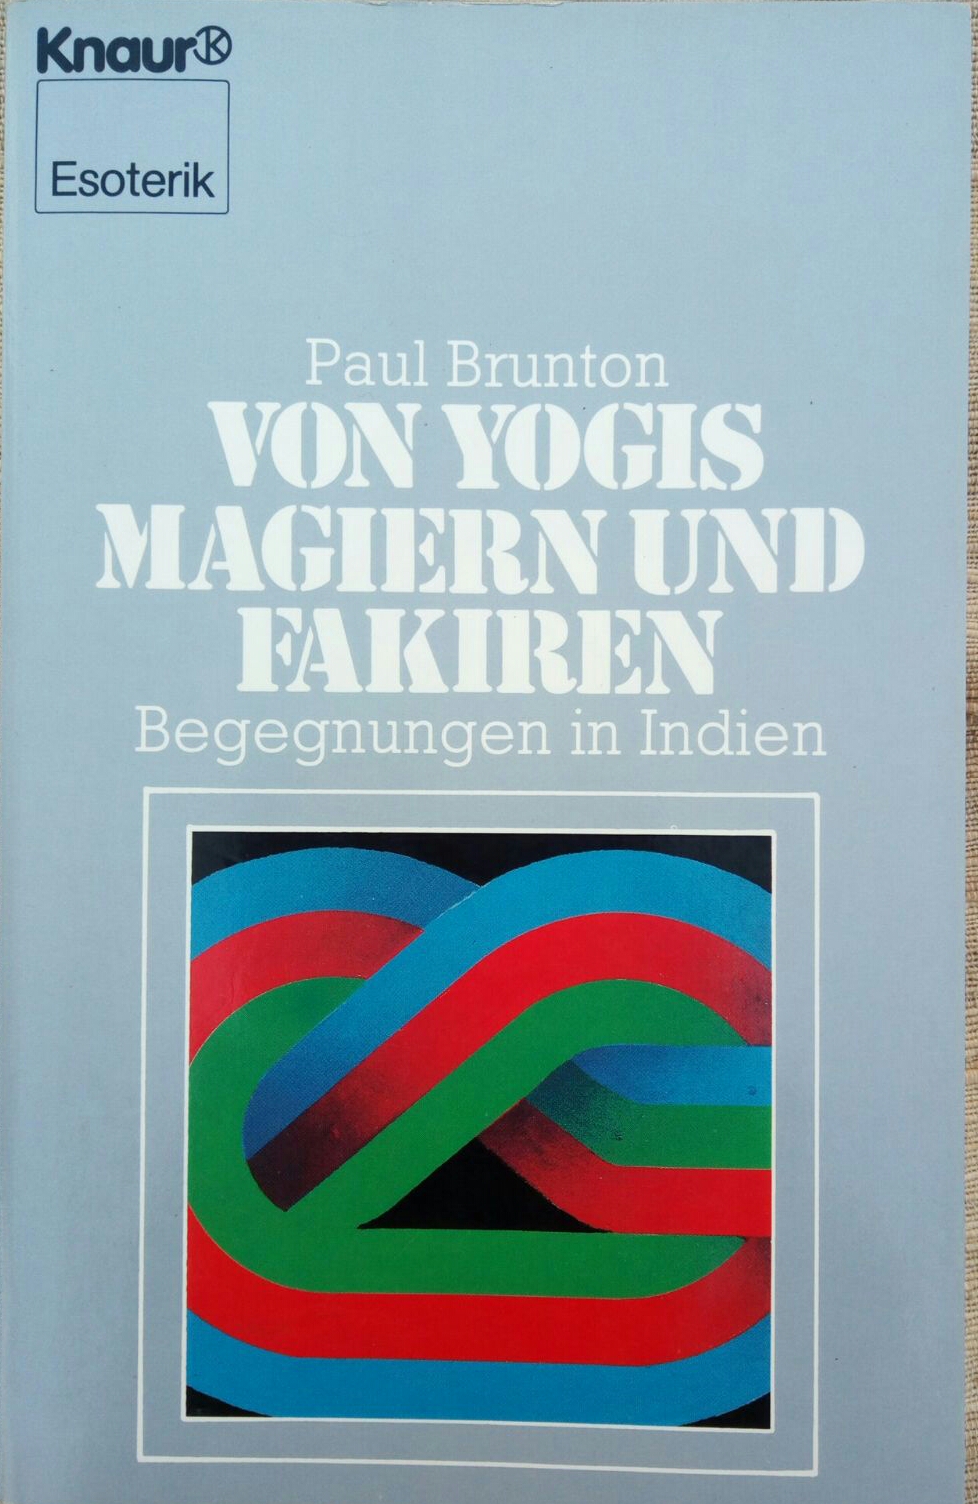 Shirdi Sai Baba Temple Frankfurt Germany (Deutschland) recommended book - Von Yogis Magiern und Fakiren .